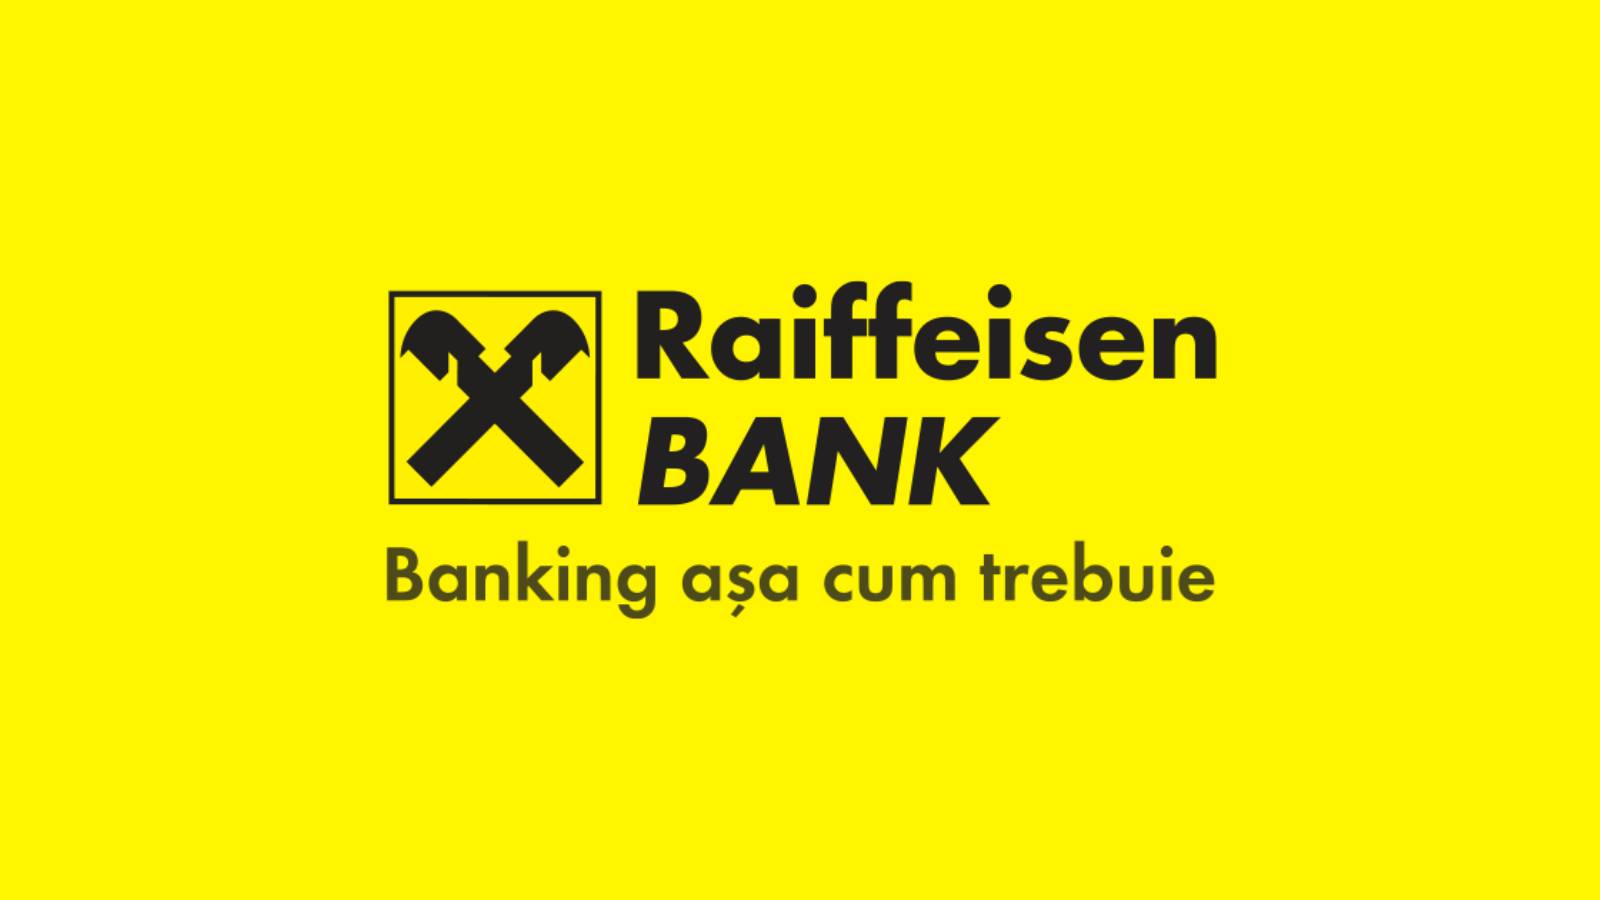 La decisión anunciada oficialmente del banco Raiffeisen afecta a los clientes